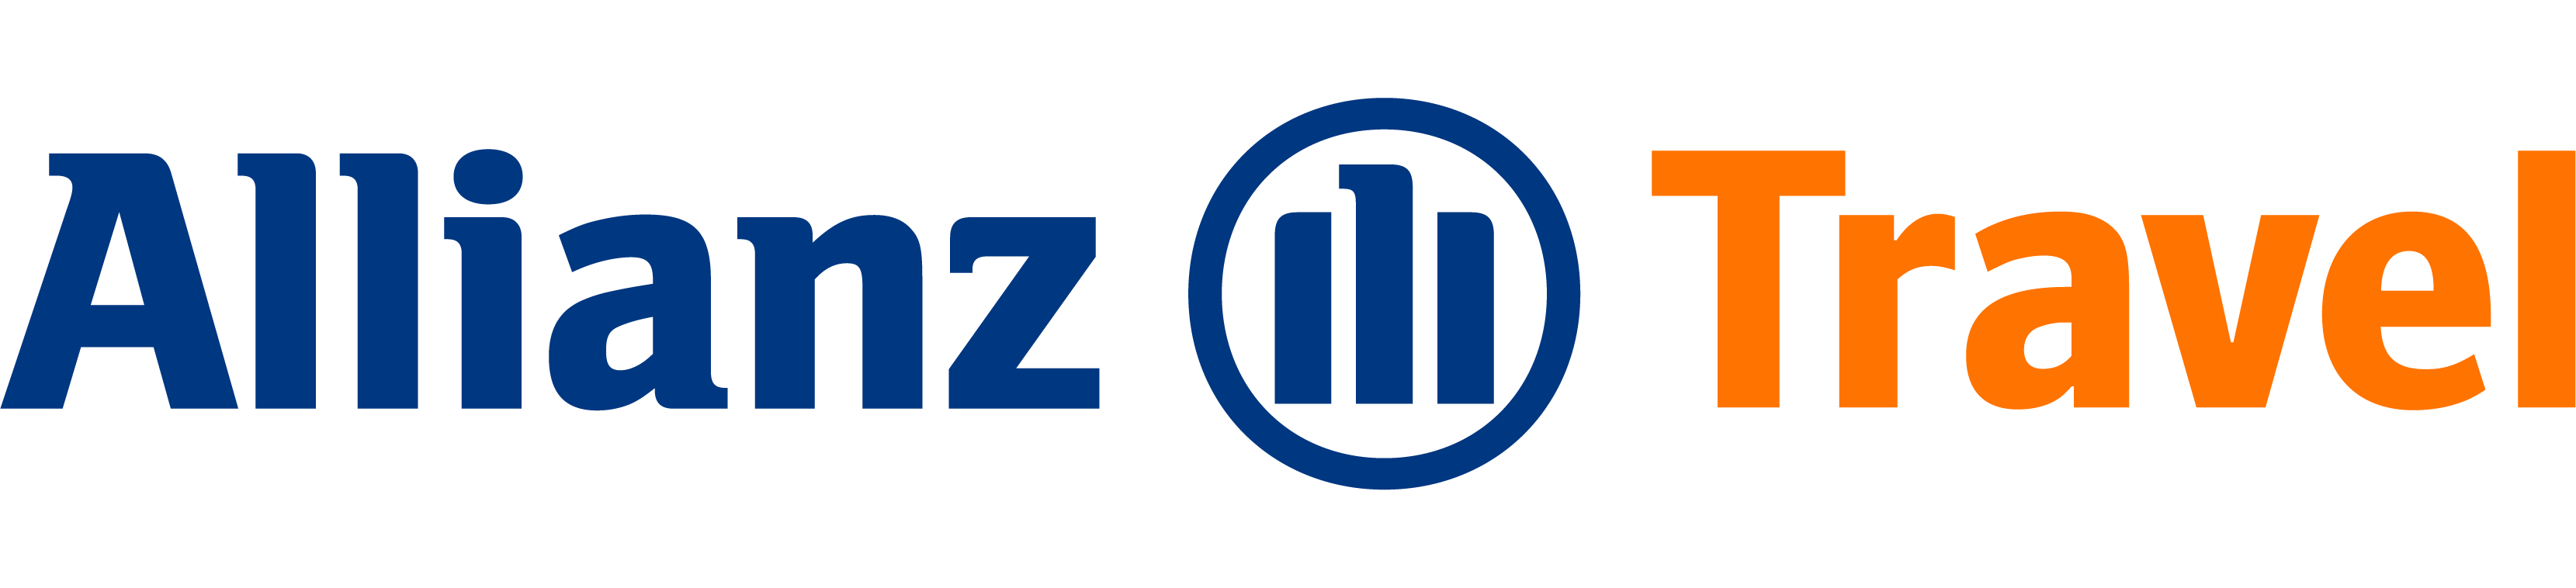 Allianz Travel - световeн лидер в застраховането!